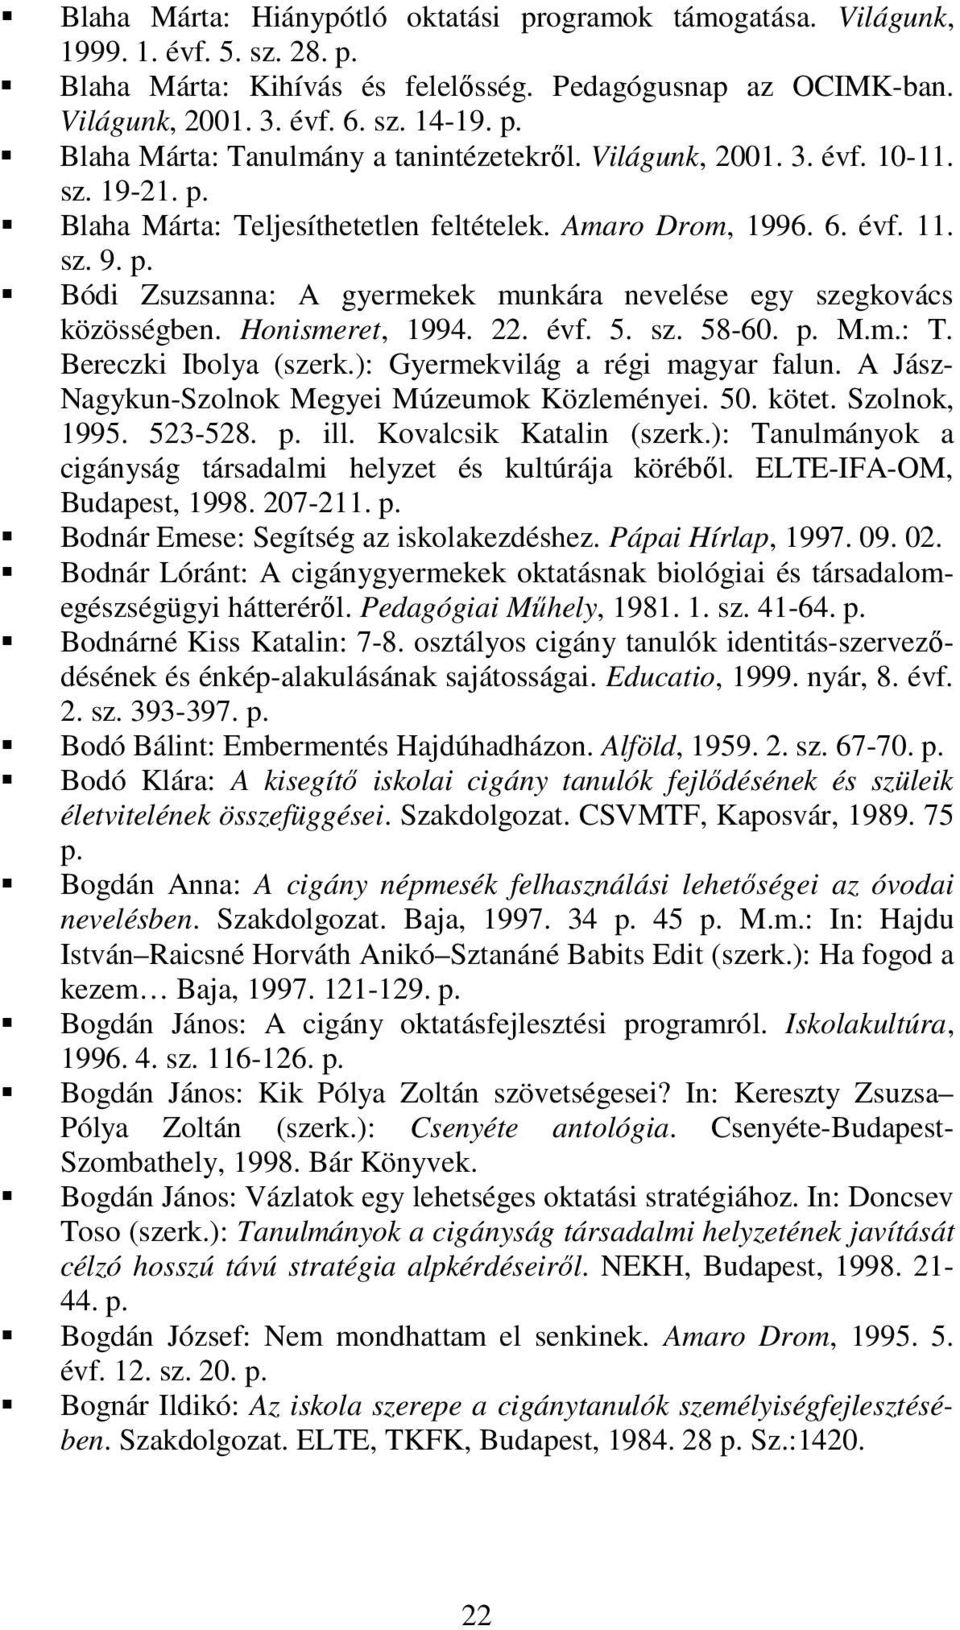 Bódi Zsuzsanna: A gyermekek munkára nevelése egy szegkovács közösségben. Honismeret, 1994. 22. évf. 5. sz. 58-60. M.m.: T. Bereczki Ibolya (szerk.): Gyermekvilág a régi magyar falun.